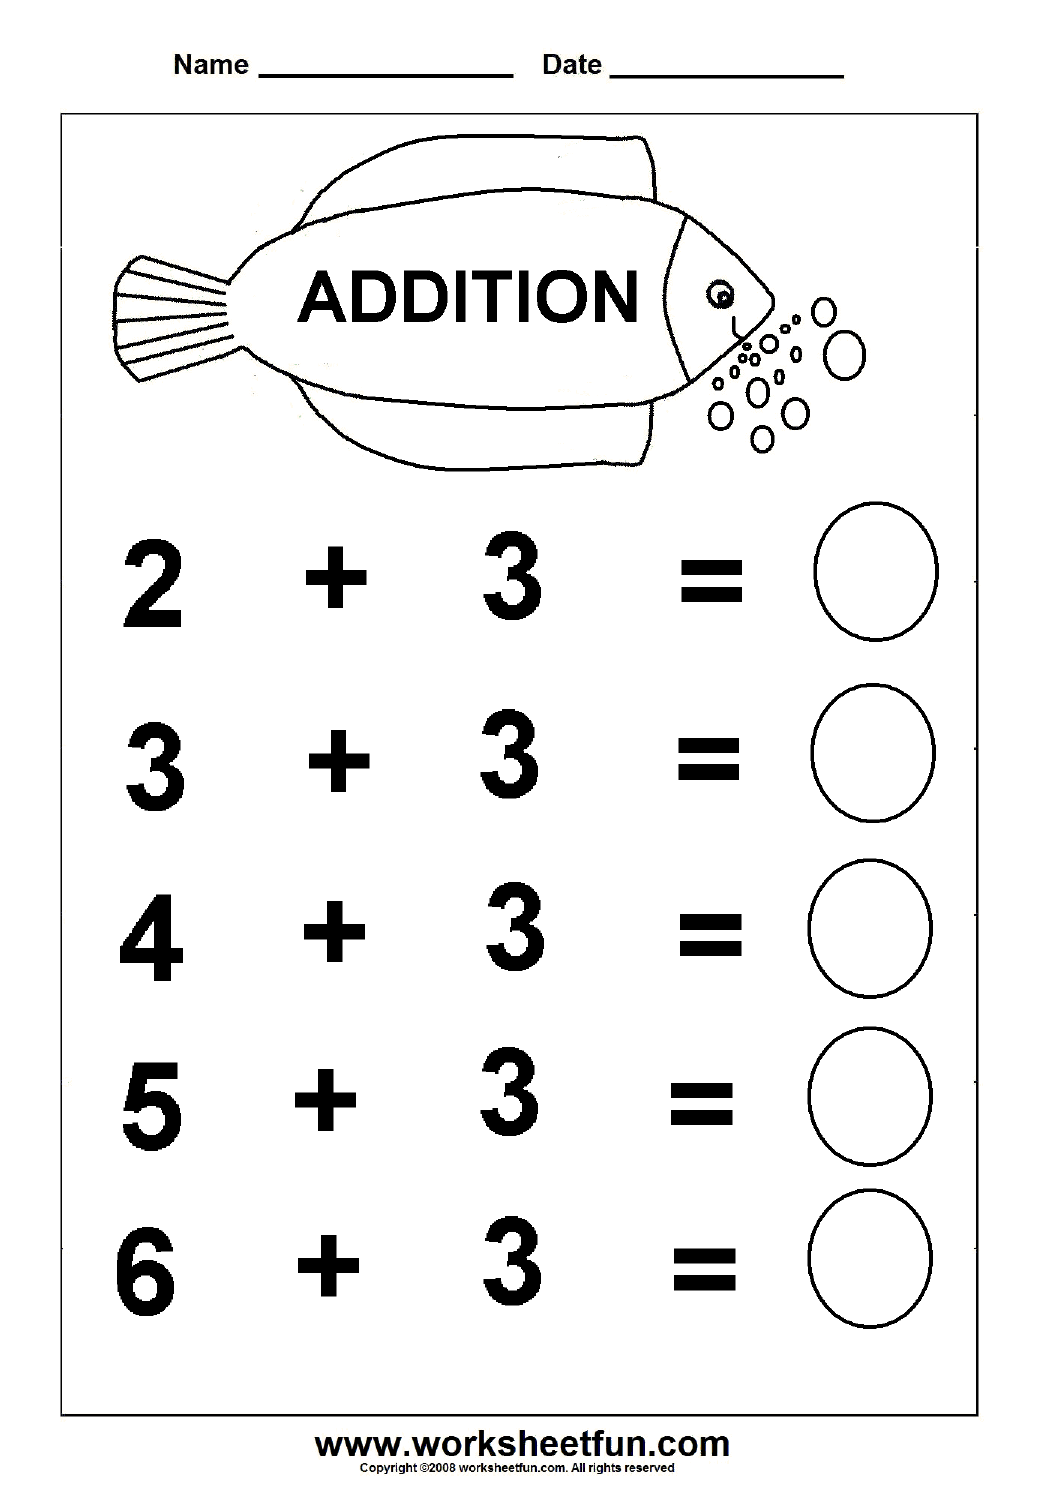 addition-worksheets-kindergarten-free-printables-416667-free